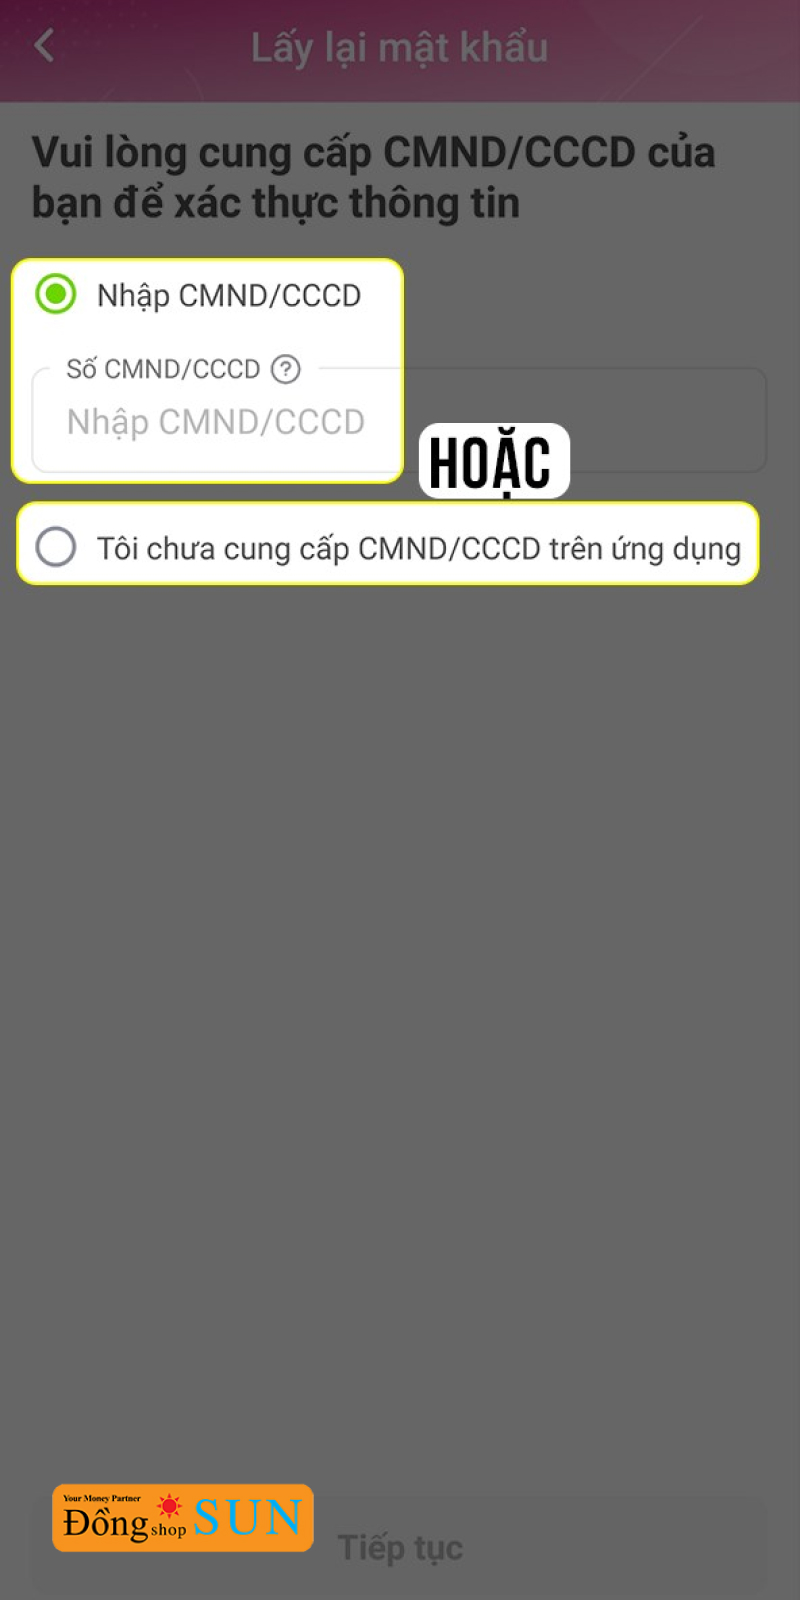 Điền số CMND/CCCD vào ô “Nhập CMND/CCCD".